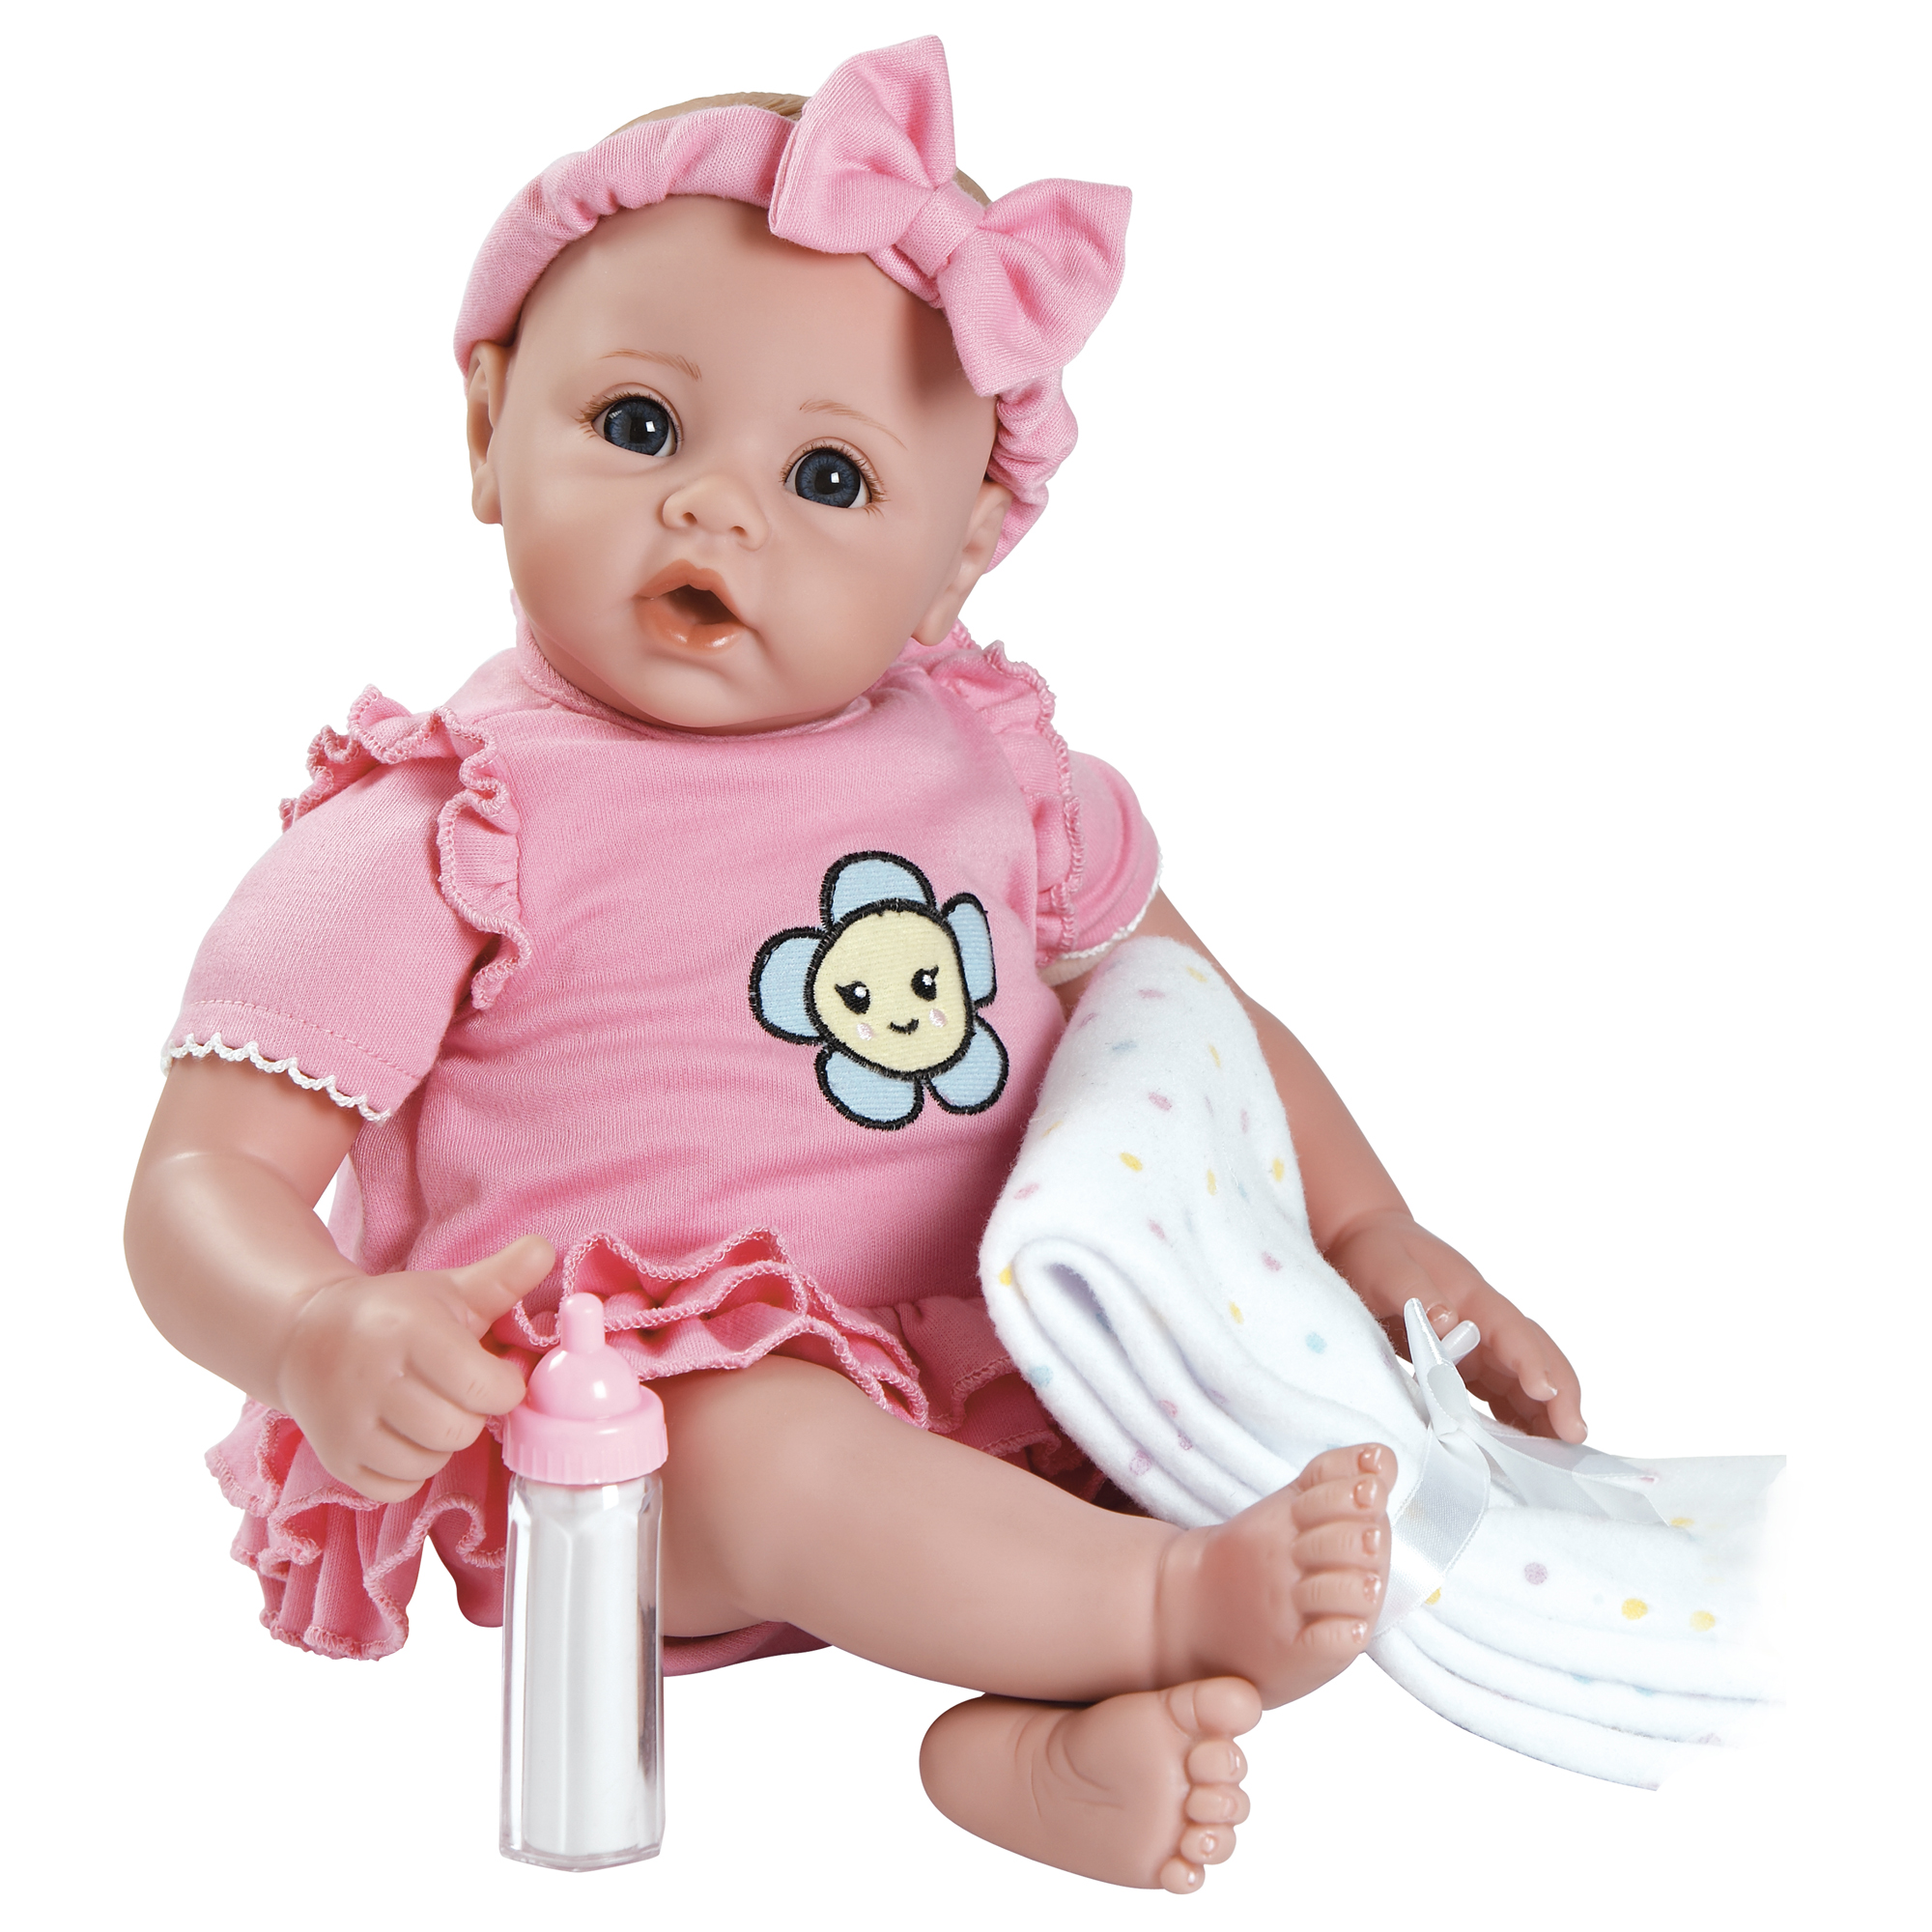 Купить хорошую куклу. Адора Беби. Куклы для девочек. Игрушки для девочек куклы. Пупсы куклы для девочек.